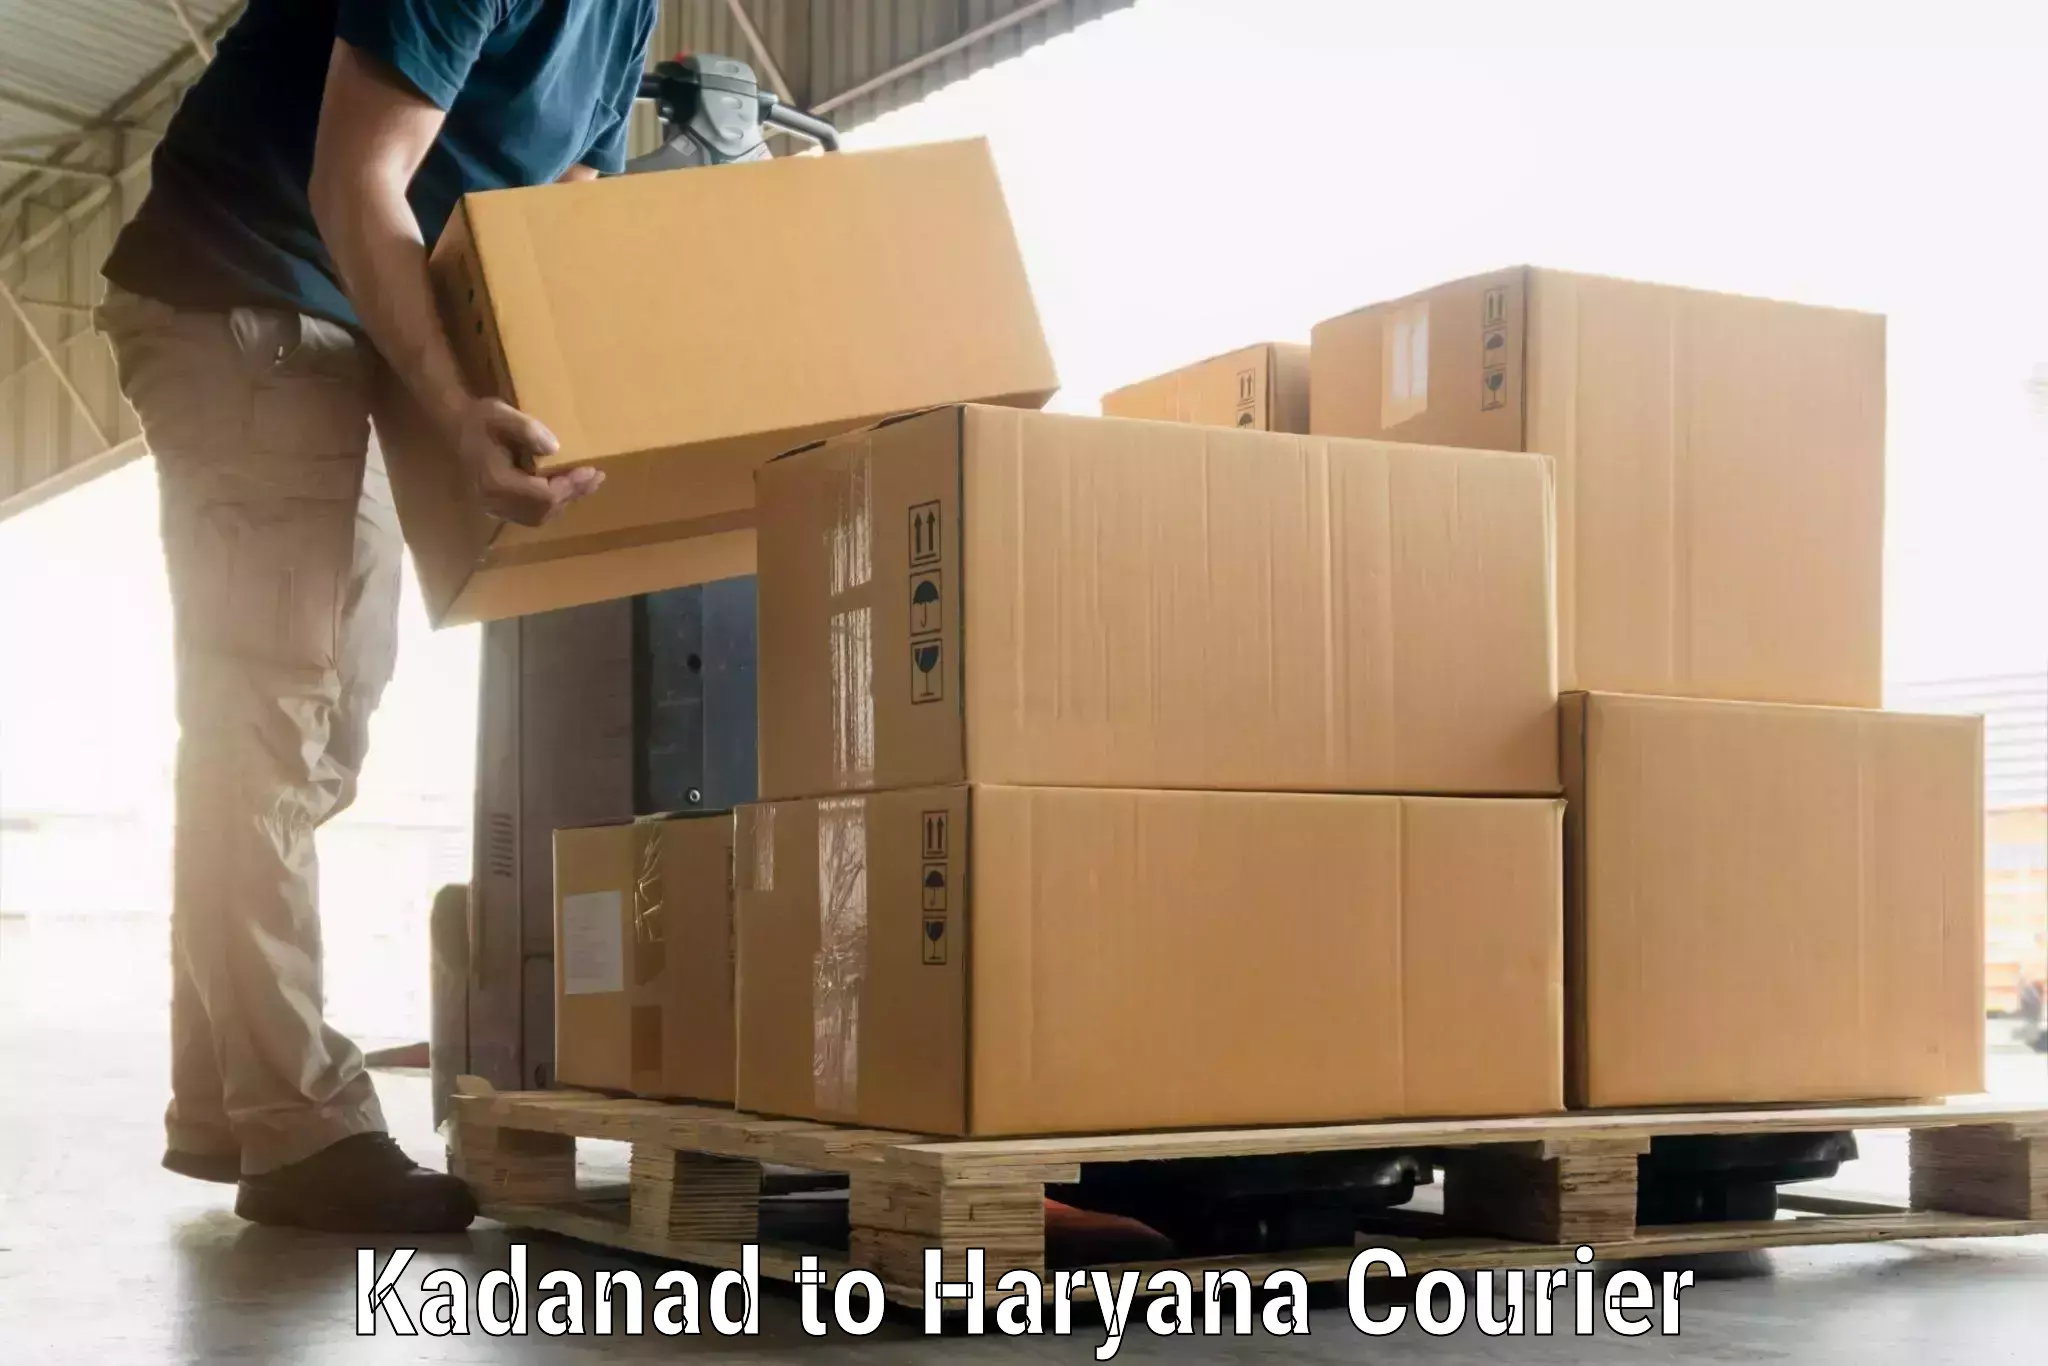 Luggage shipment specialists Kadanad to NCR Haryana